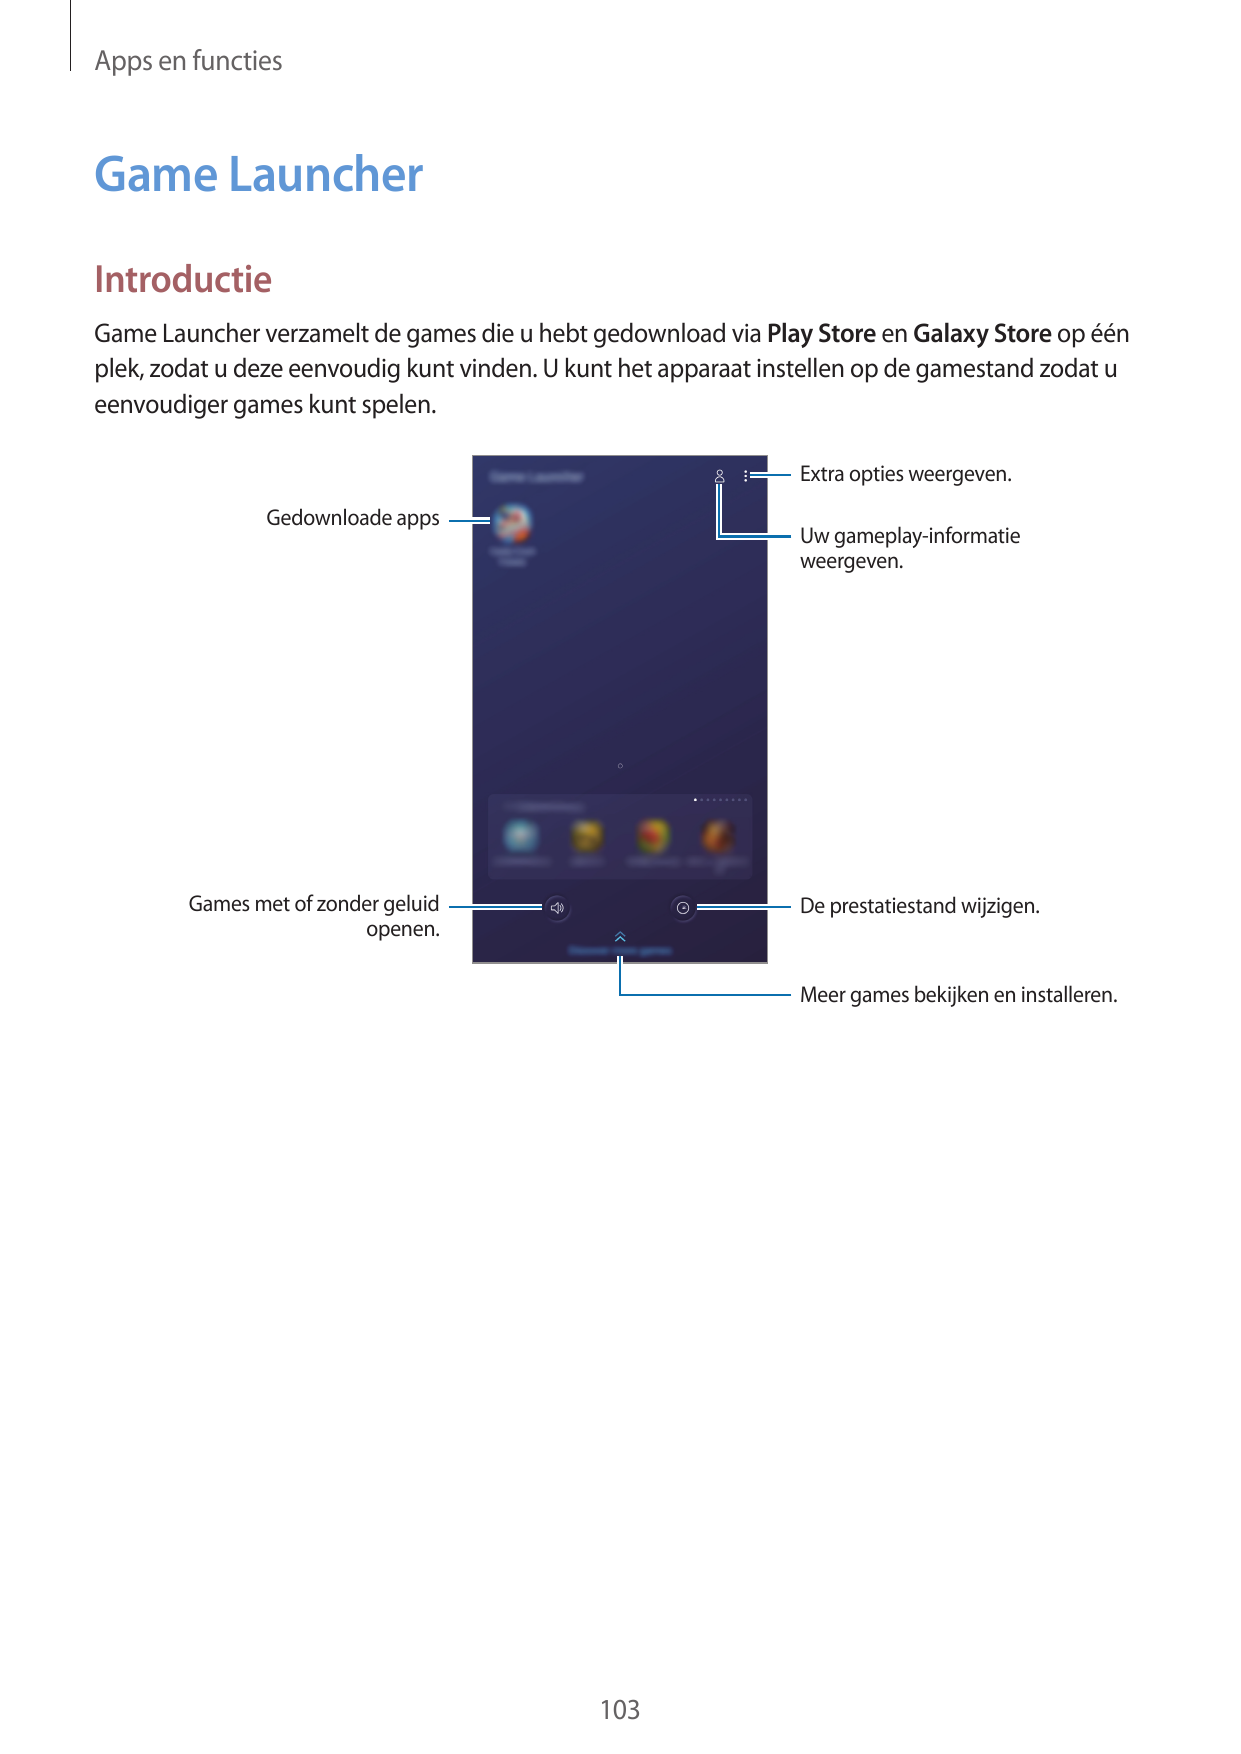 Apps en functiesGame LauncherIntroductieGame Launcher verzamelt de games die u hebt gedownload via Play Store en Galaxy Store op